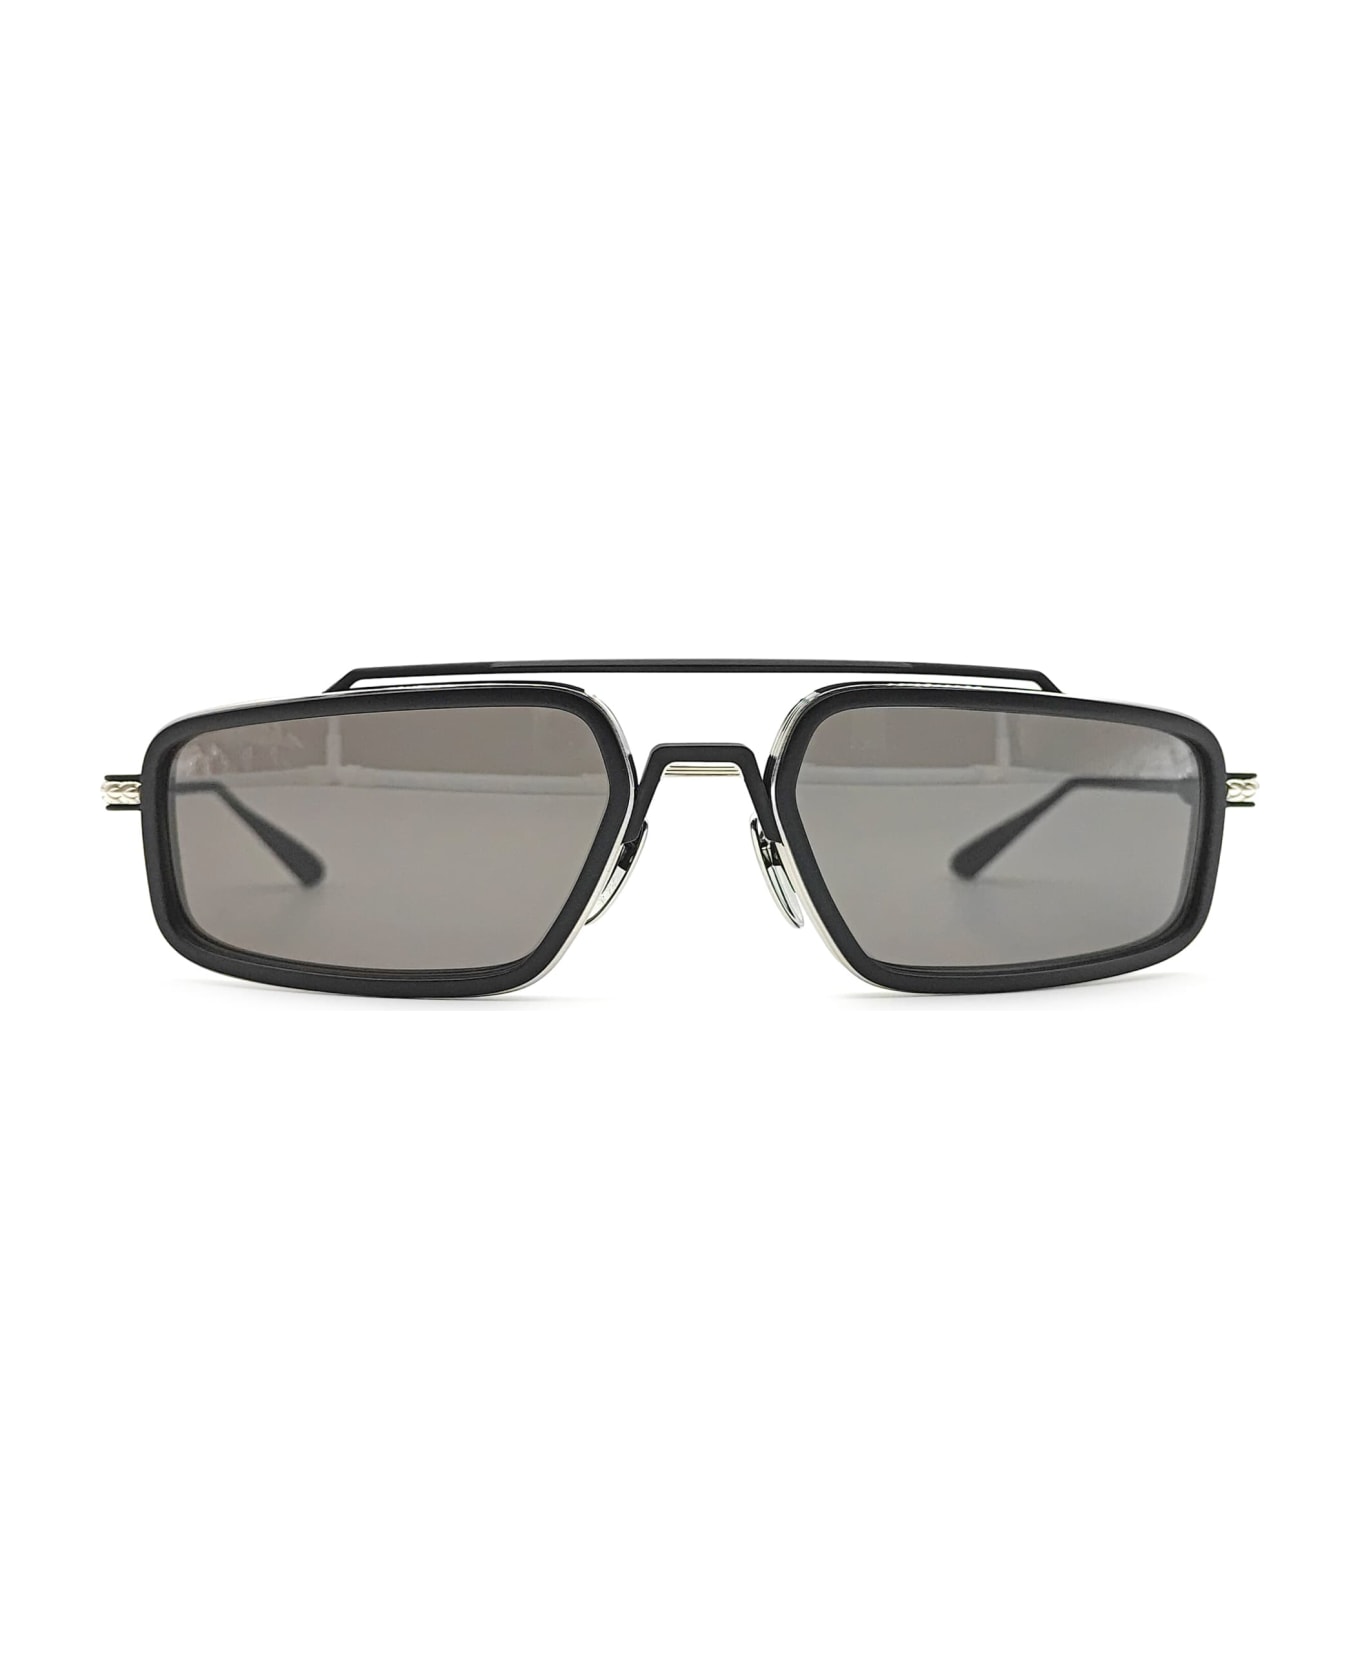 Chrome Hearts Eader - Brushed Silver / Matte Black Sunglasses - Matte black